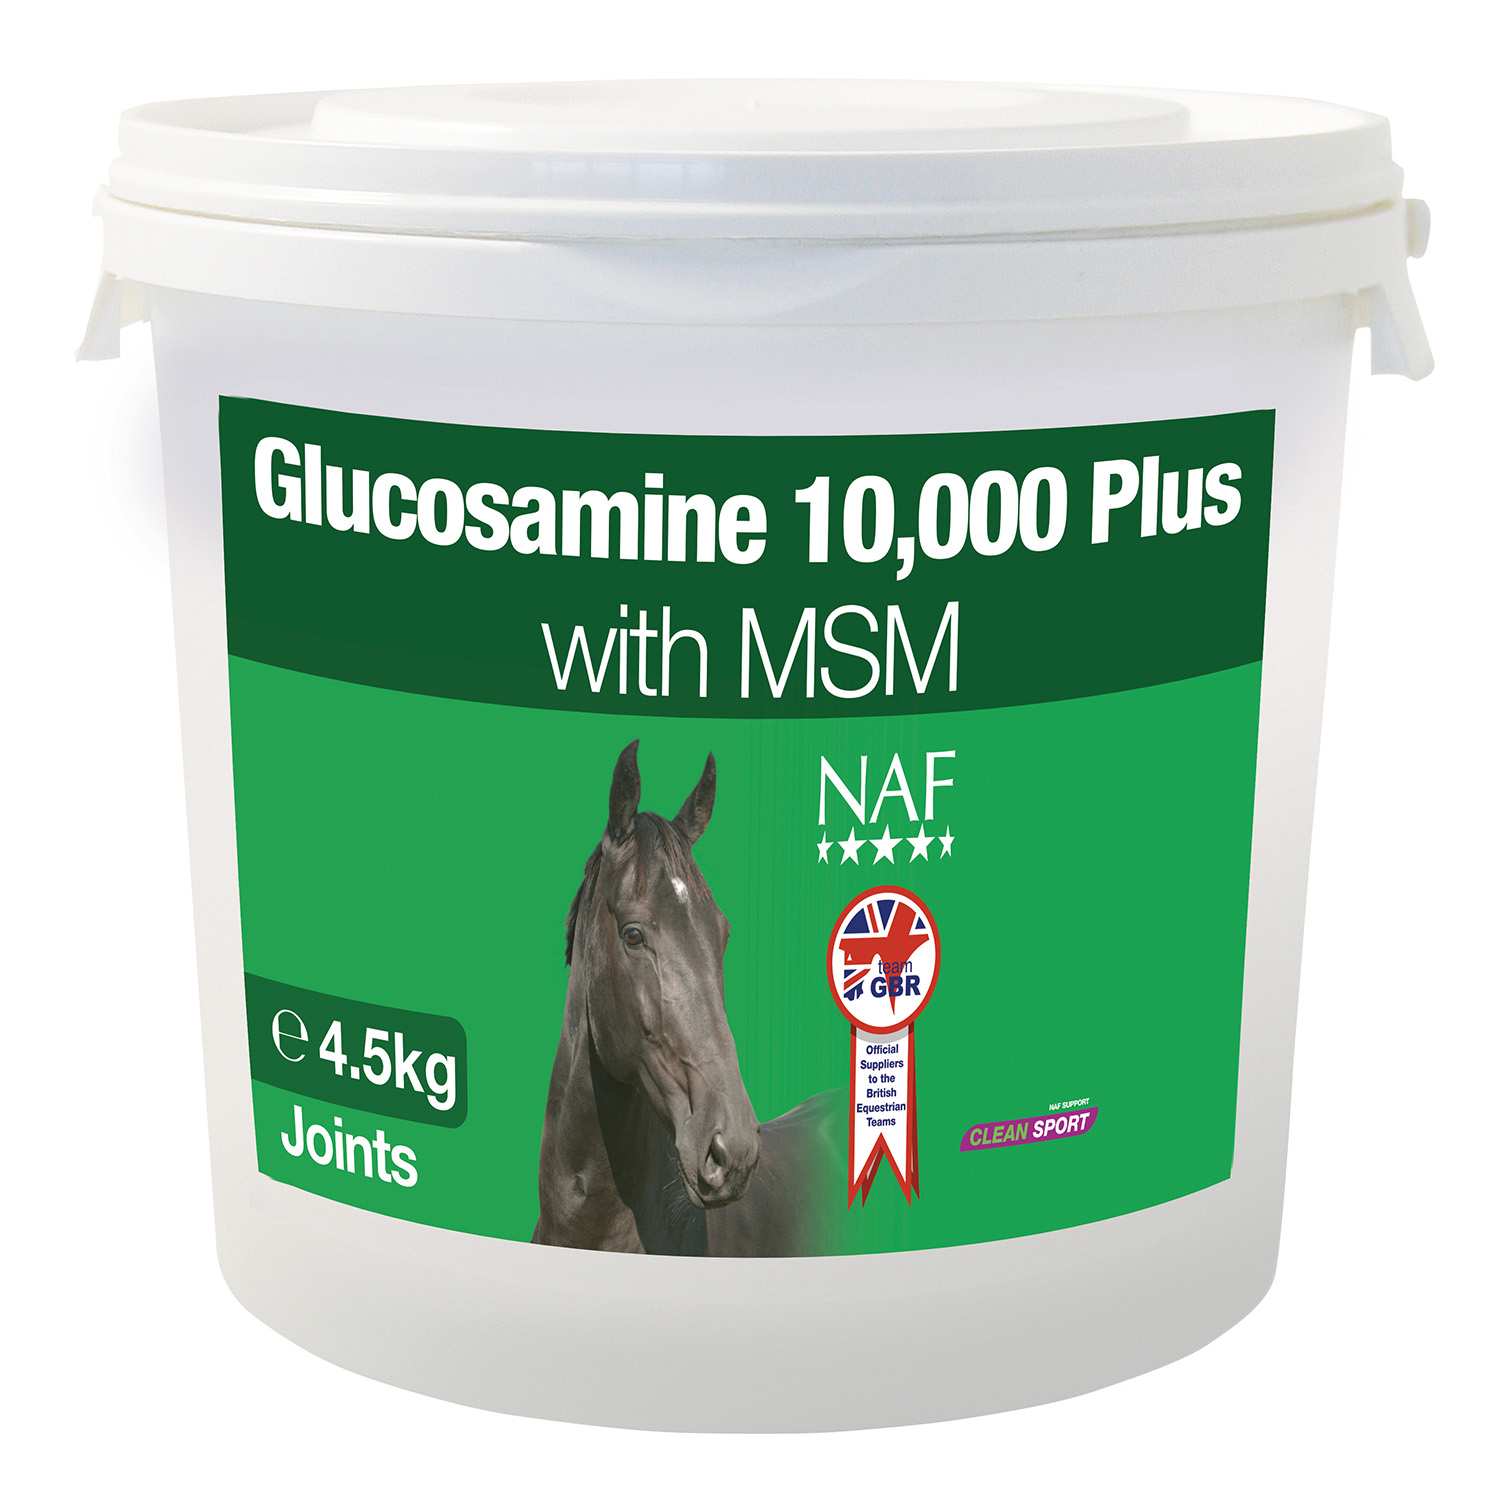 NAF GLUCOSAMINE 10,000 PLUS WITH MSM 4.5 KG 4.5 KG